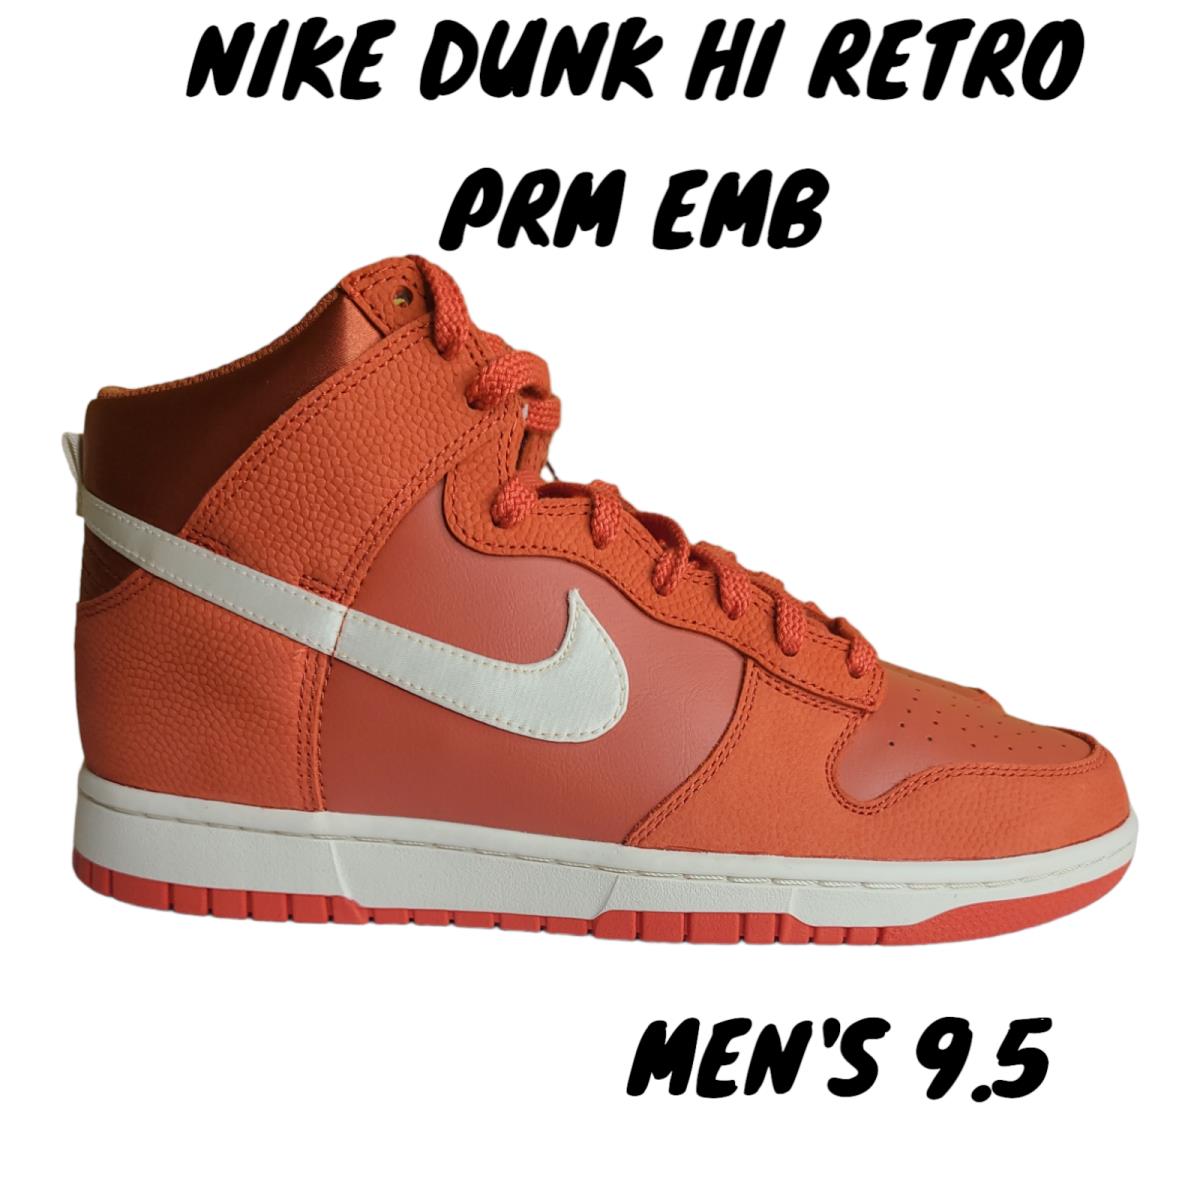 Nike Dunk Hi Retro Prm Emb DH8008-800 Mantra Orange Burnt Sunrise Black Size 9.5